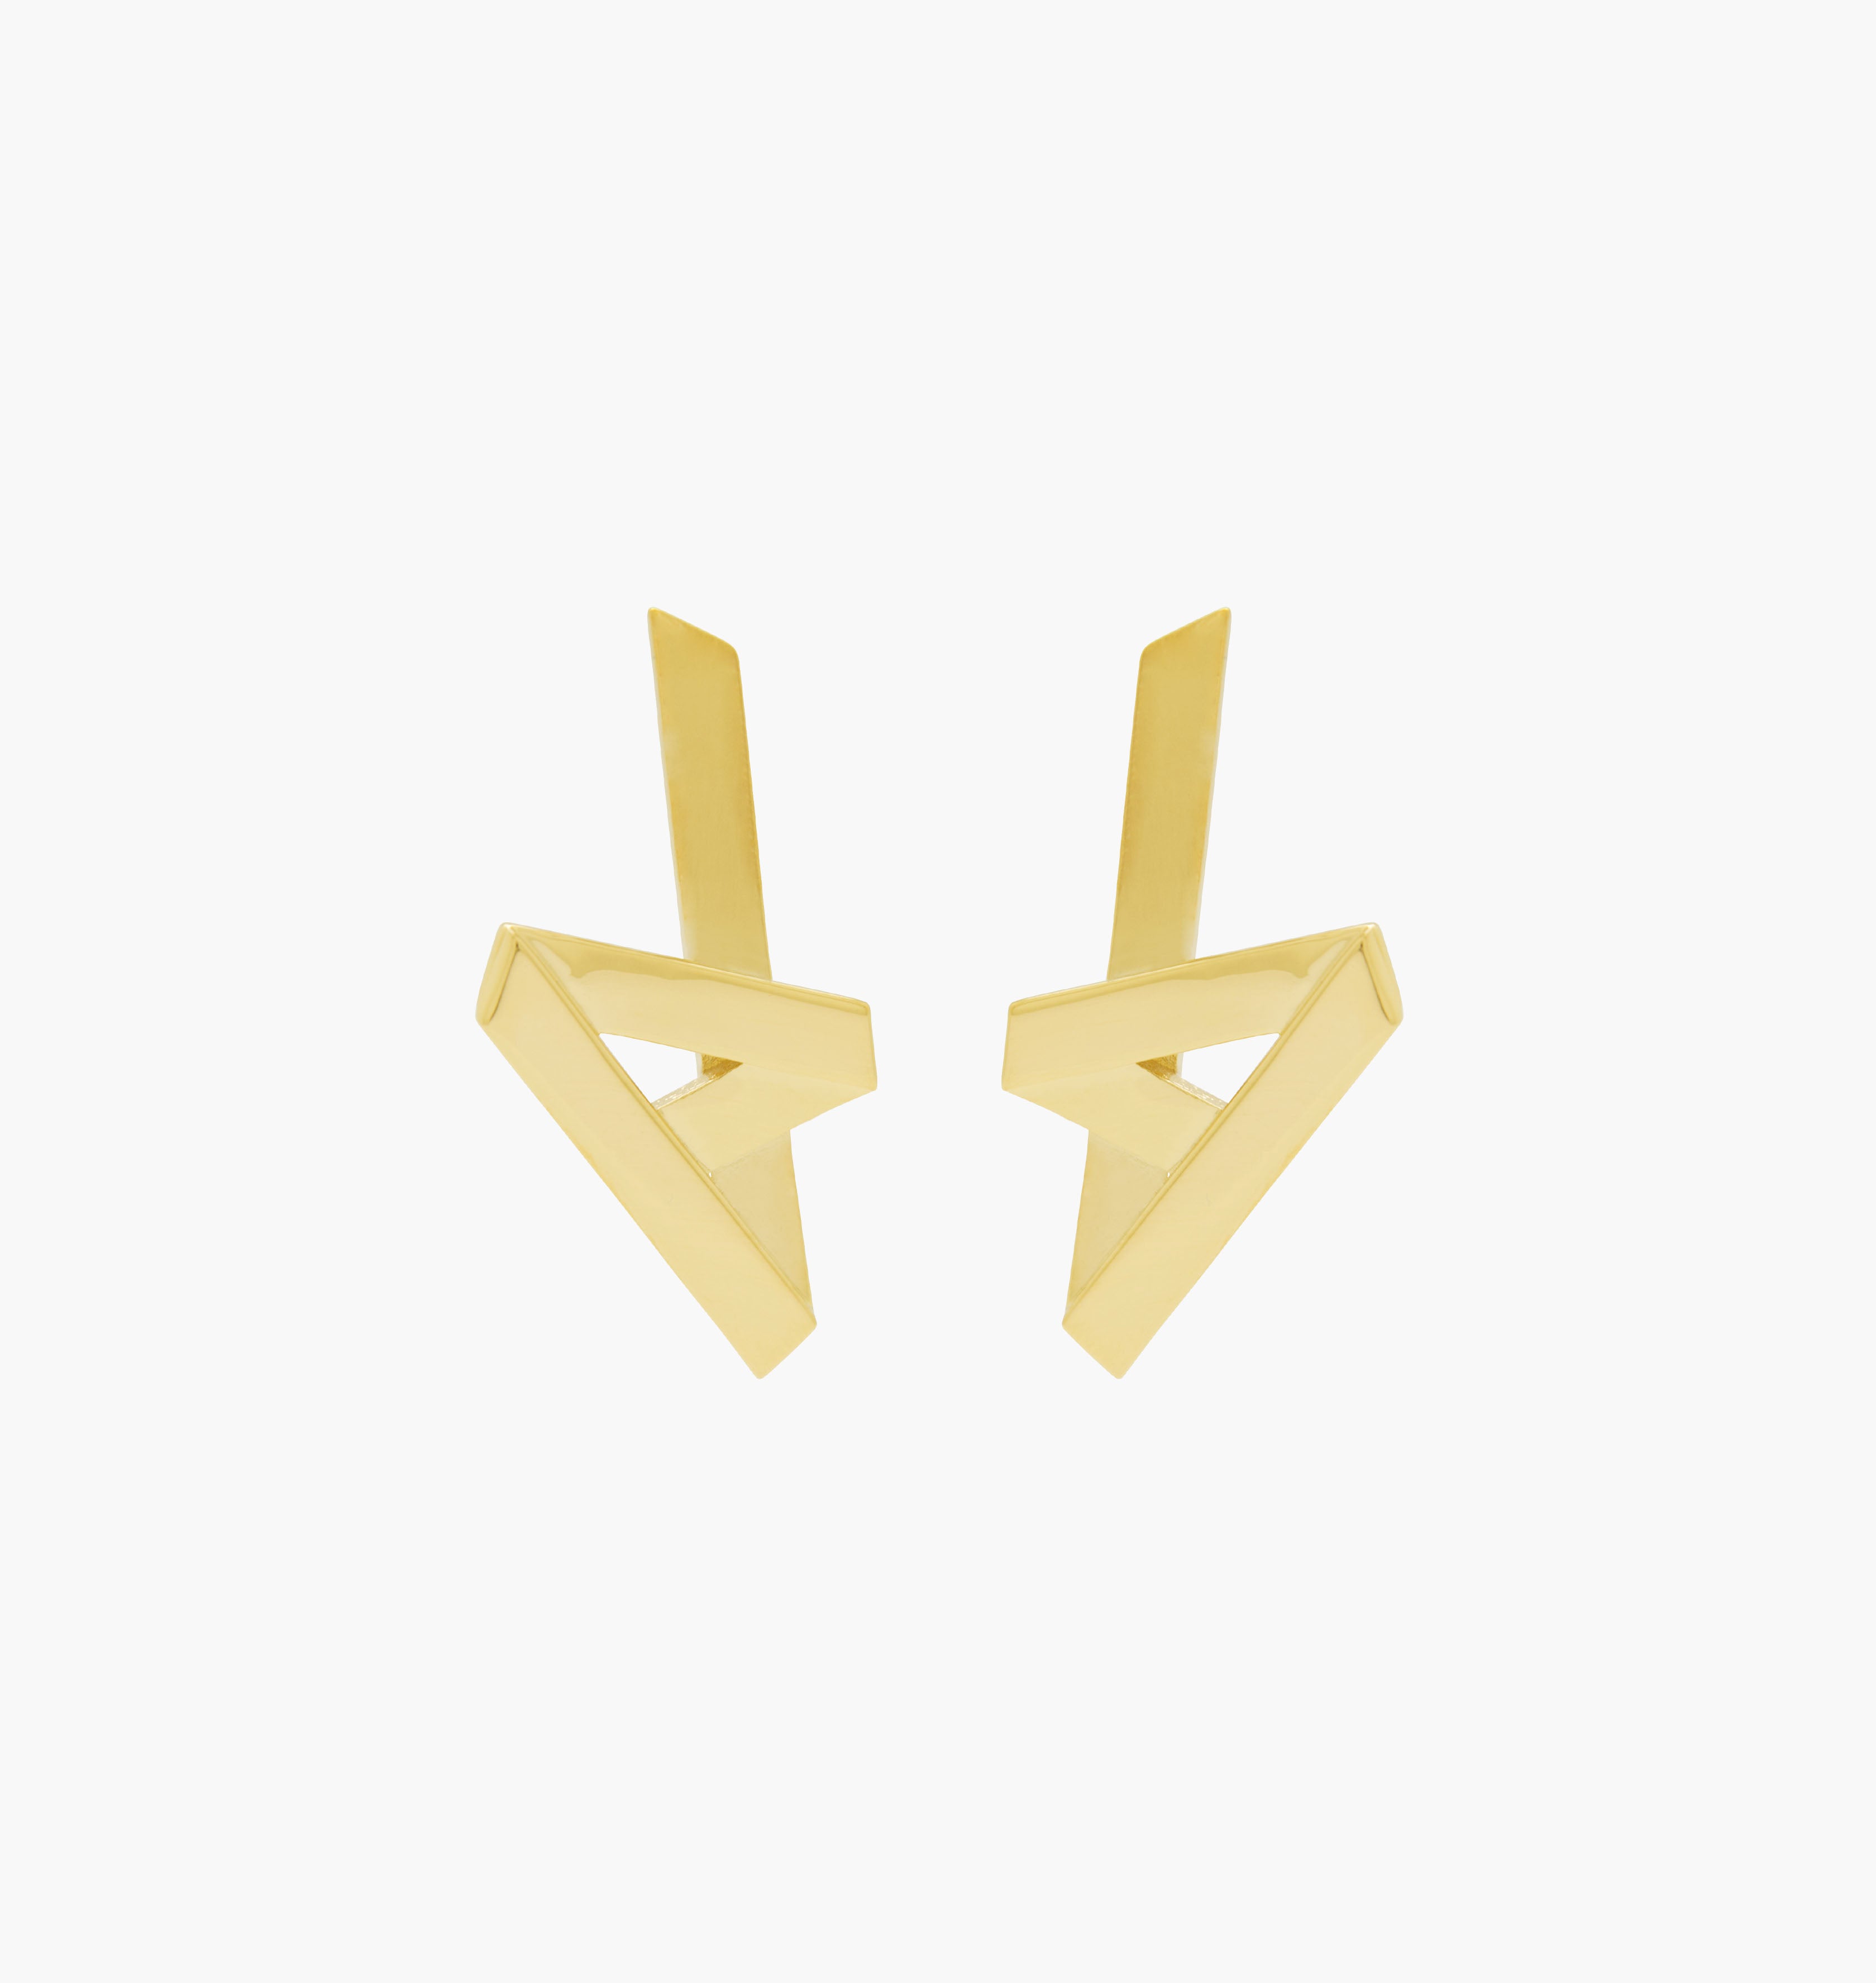 Moutton collet Nos boucles d'oreilles VIBES sont réalisées en bronze dorées à l'or fin. Elegantes et minimales, elles perfectionneront votre style avec une touche de modernité et fun, pour un look sophistiqué.  bijoux doré or, bijoux créateurs fabriqué made in Belgium , boucle d'oreille originale, boucle d'oreille or doré, zig zag, éclair , boucle d'oreille  année80